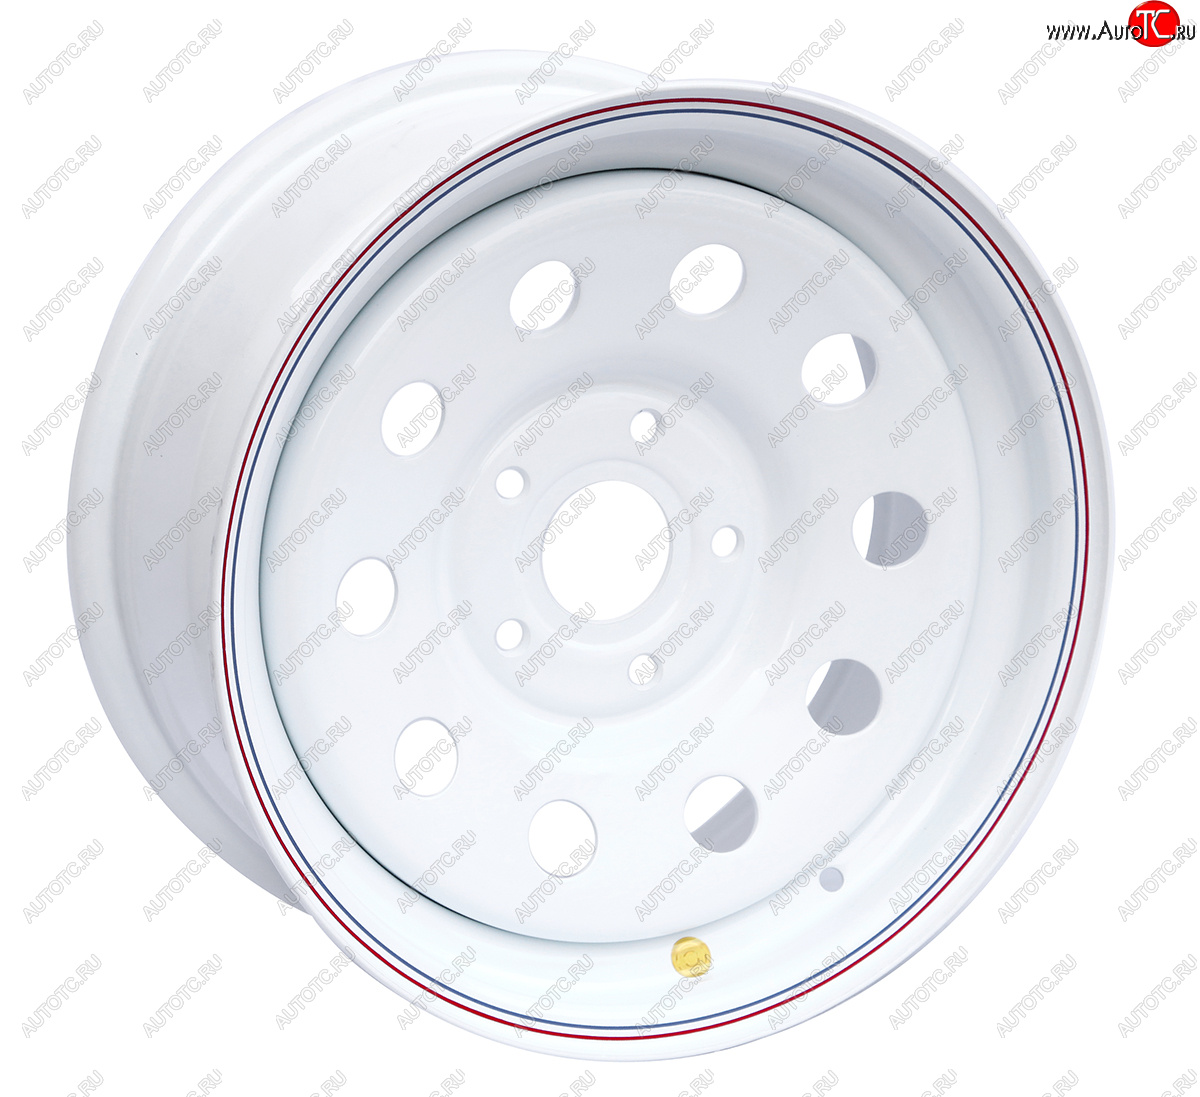 5 699 р. Штампованый диск OFF-ROAD Wheels (усиленный, круг) 7.0x16 BMW 5 серия E61 универсал рестайлинг (2007-2010) 5x120.0xDIA72.6xET20.0 (Цвет: белый)